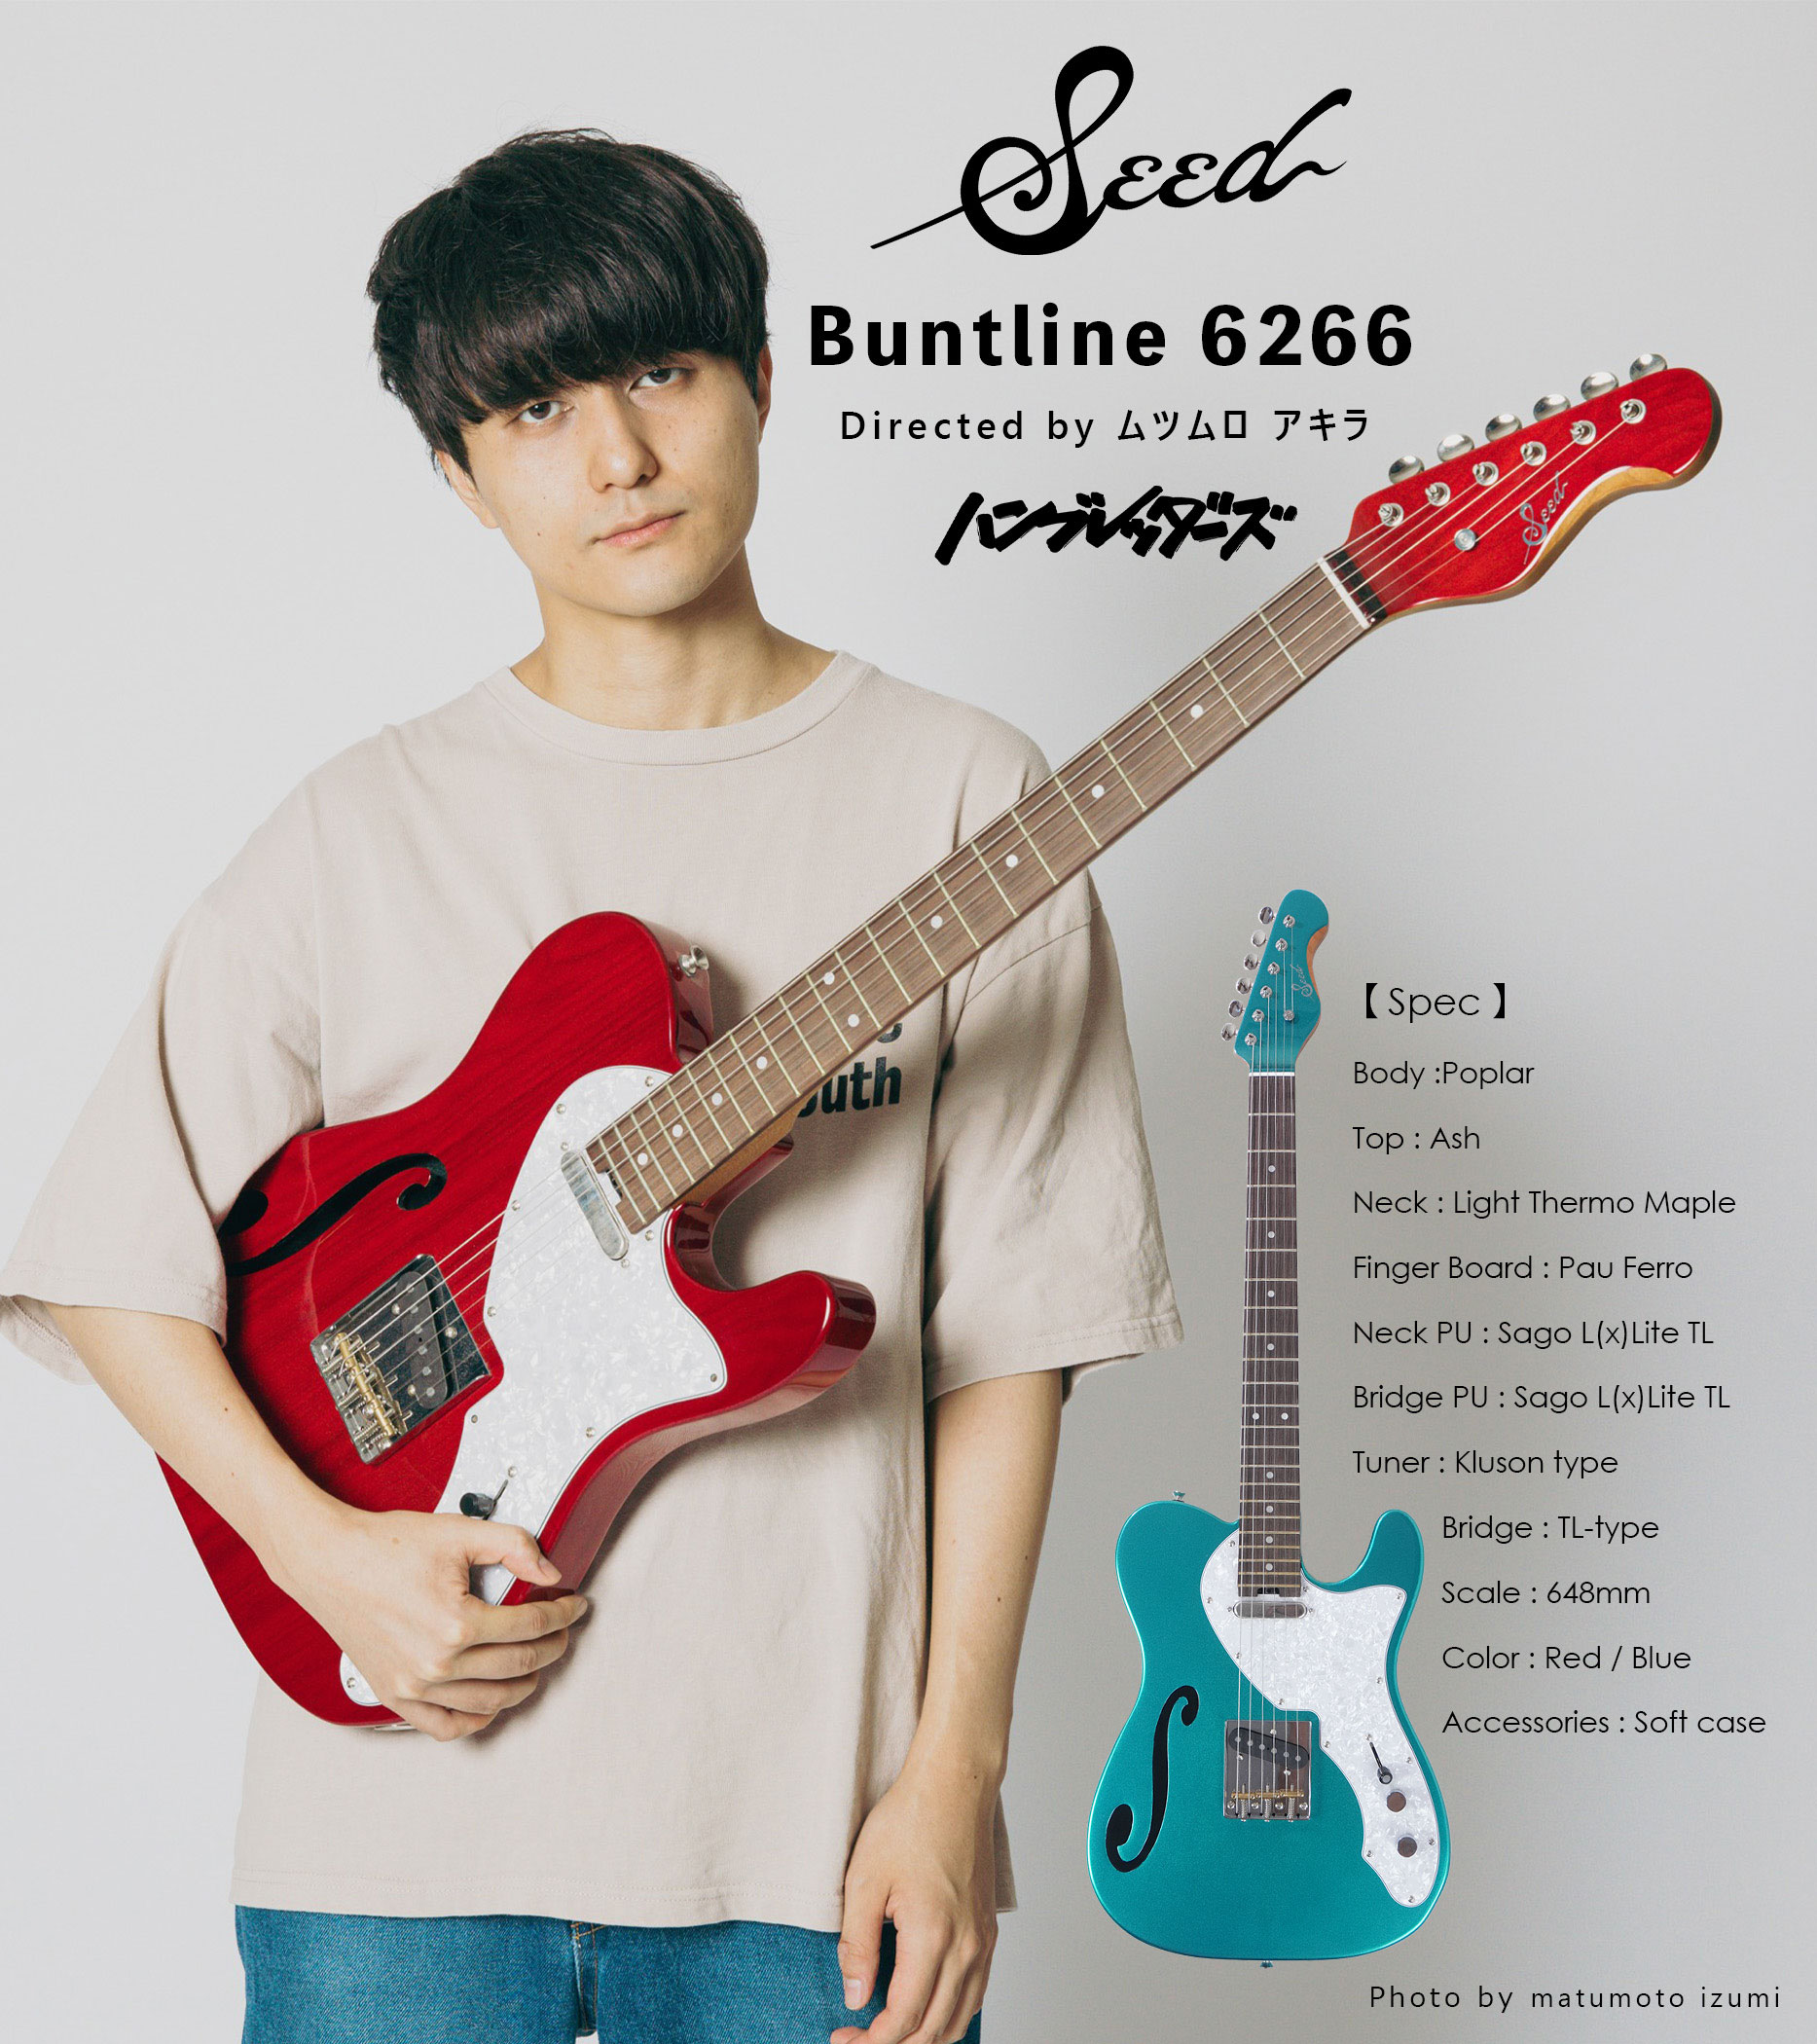 Seed Buntline 6266 ハンブレッダーズ ムツムロ アキラ モデル | Sago 